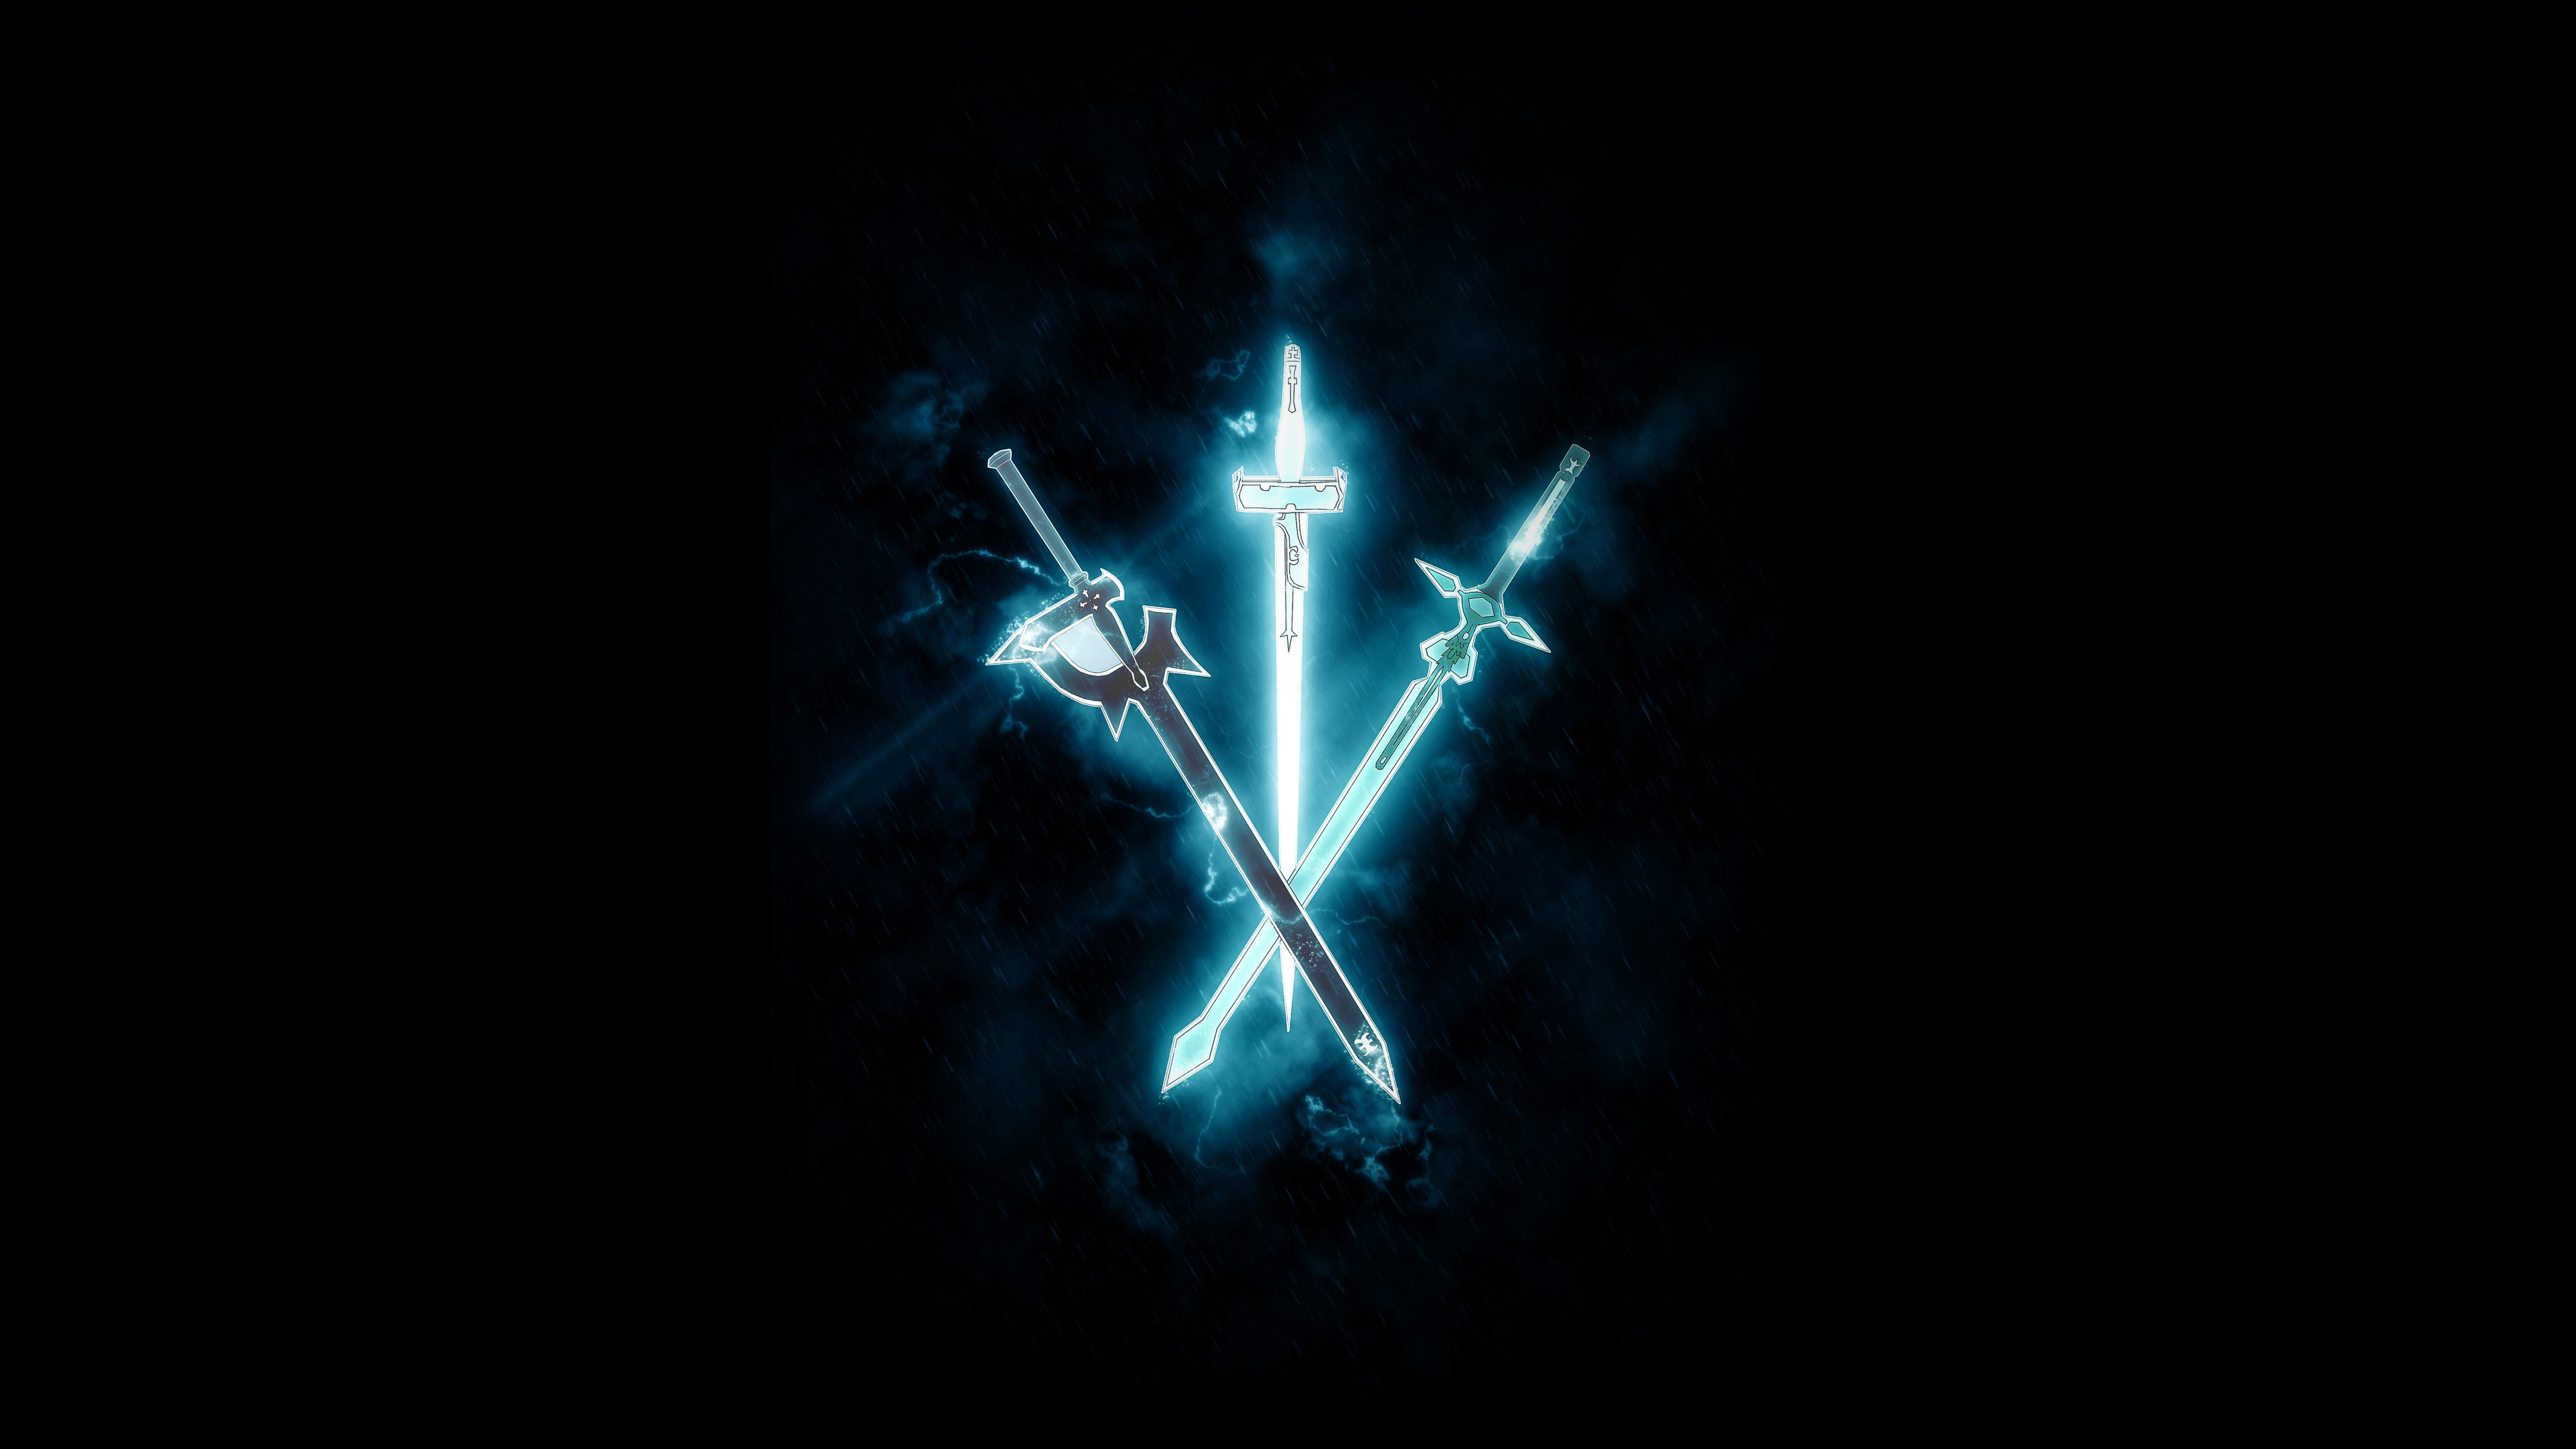 Kiếm Elucidator: Hãy khám phá kiếm Elucidator thần thánh trong thế giới anime Sword Art Online. Với thiết kế độc đáo và sức mạnh kinh hoàng, Elucidator đã trở thành biểu tượng của các fan hâm mộ anime. Xem hình ảnh kiếm Elucidator để đắm chìm trong thế giới Sword Art Online.